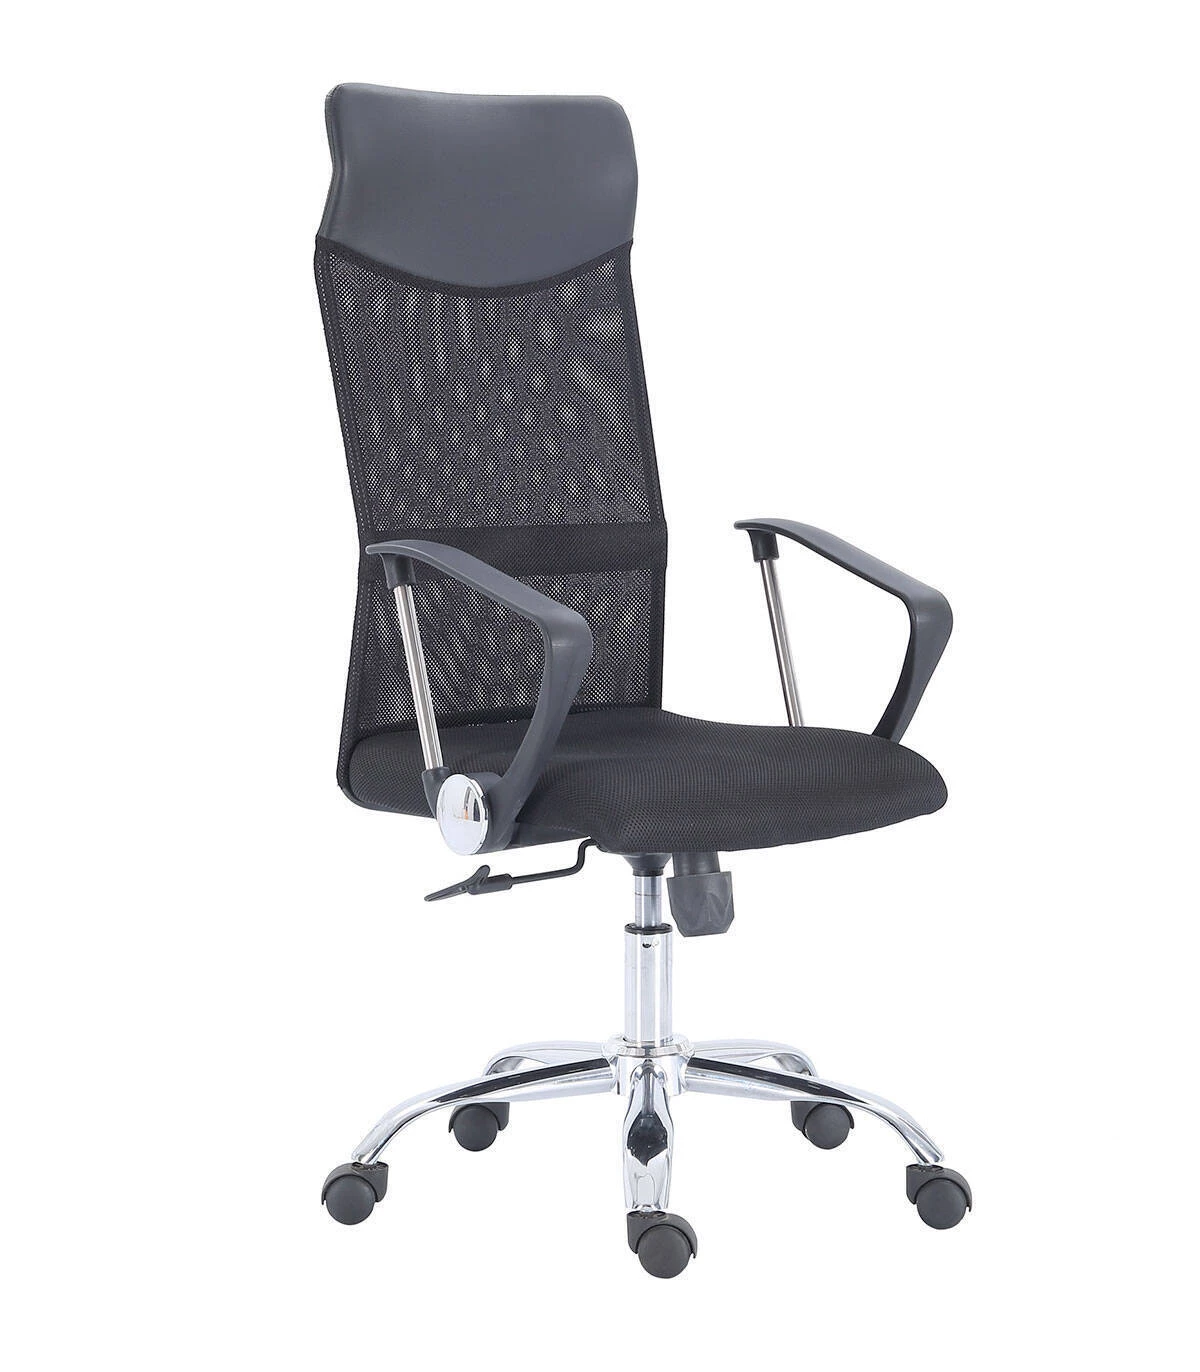 Un sillón de polipiel para oficina o despacho de diseño clásico